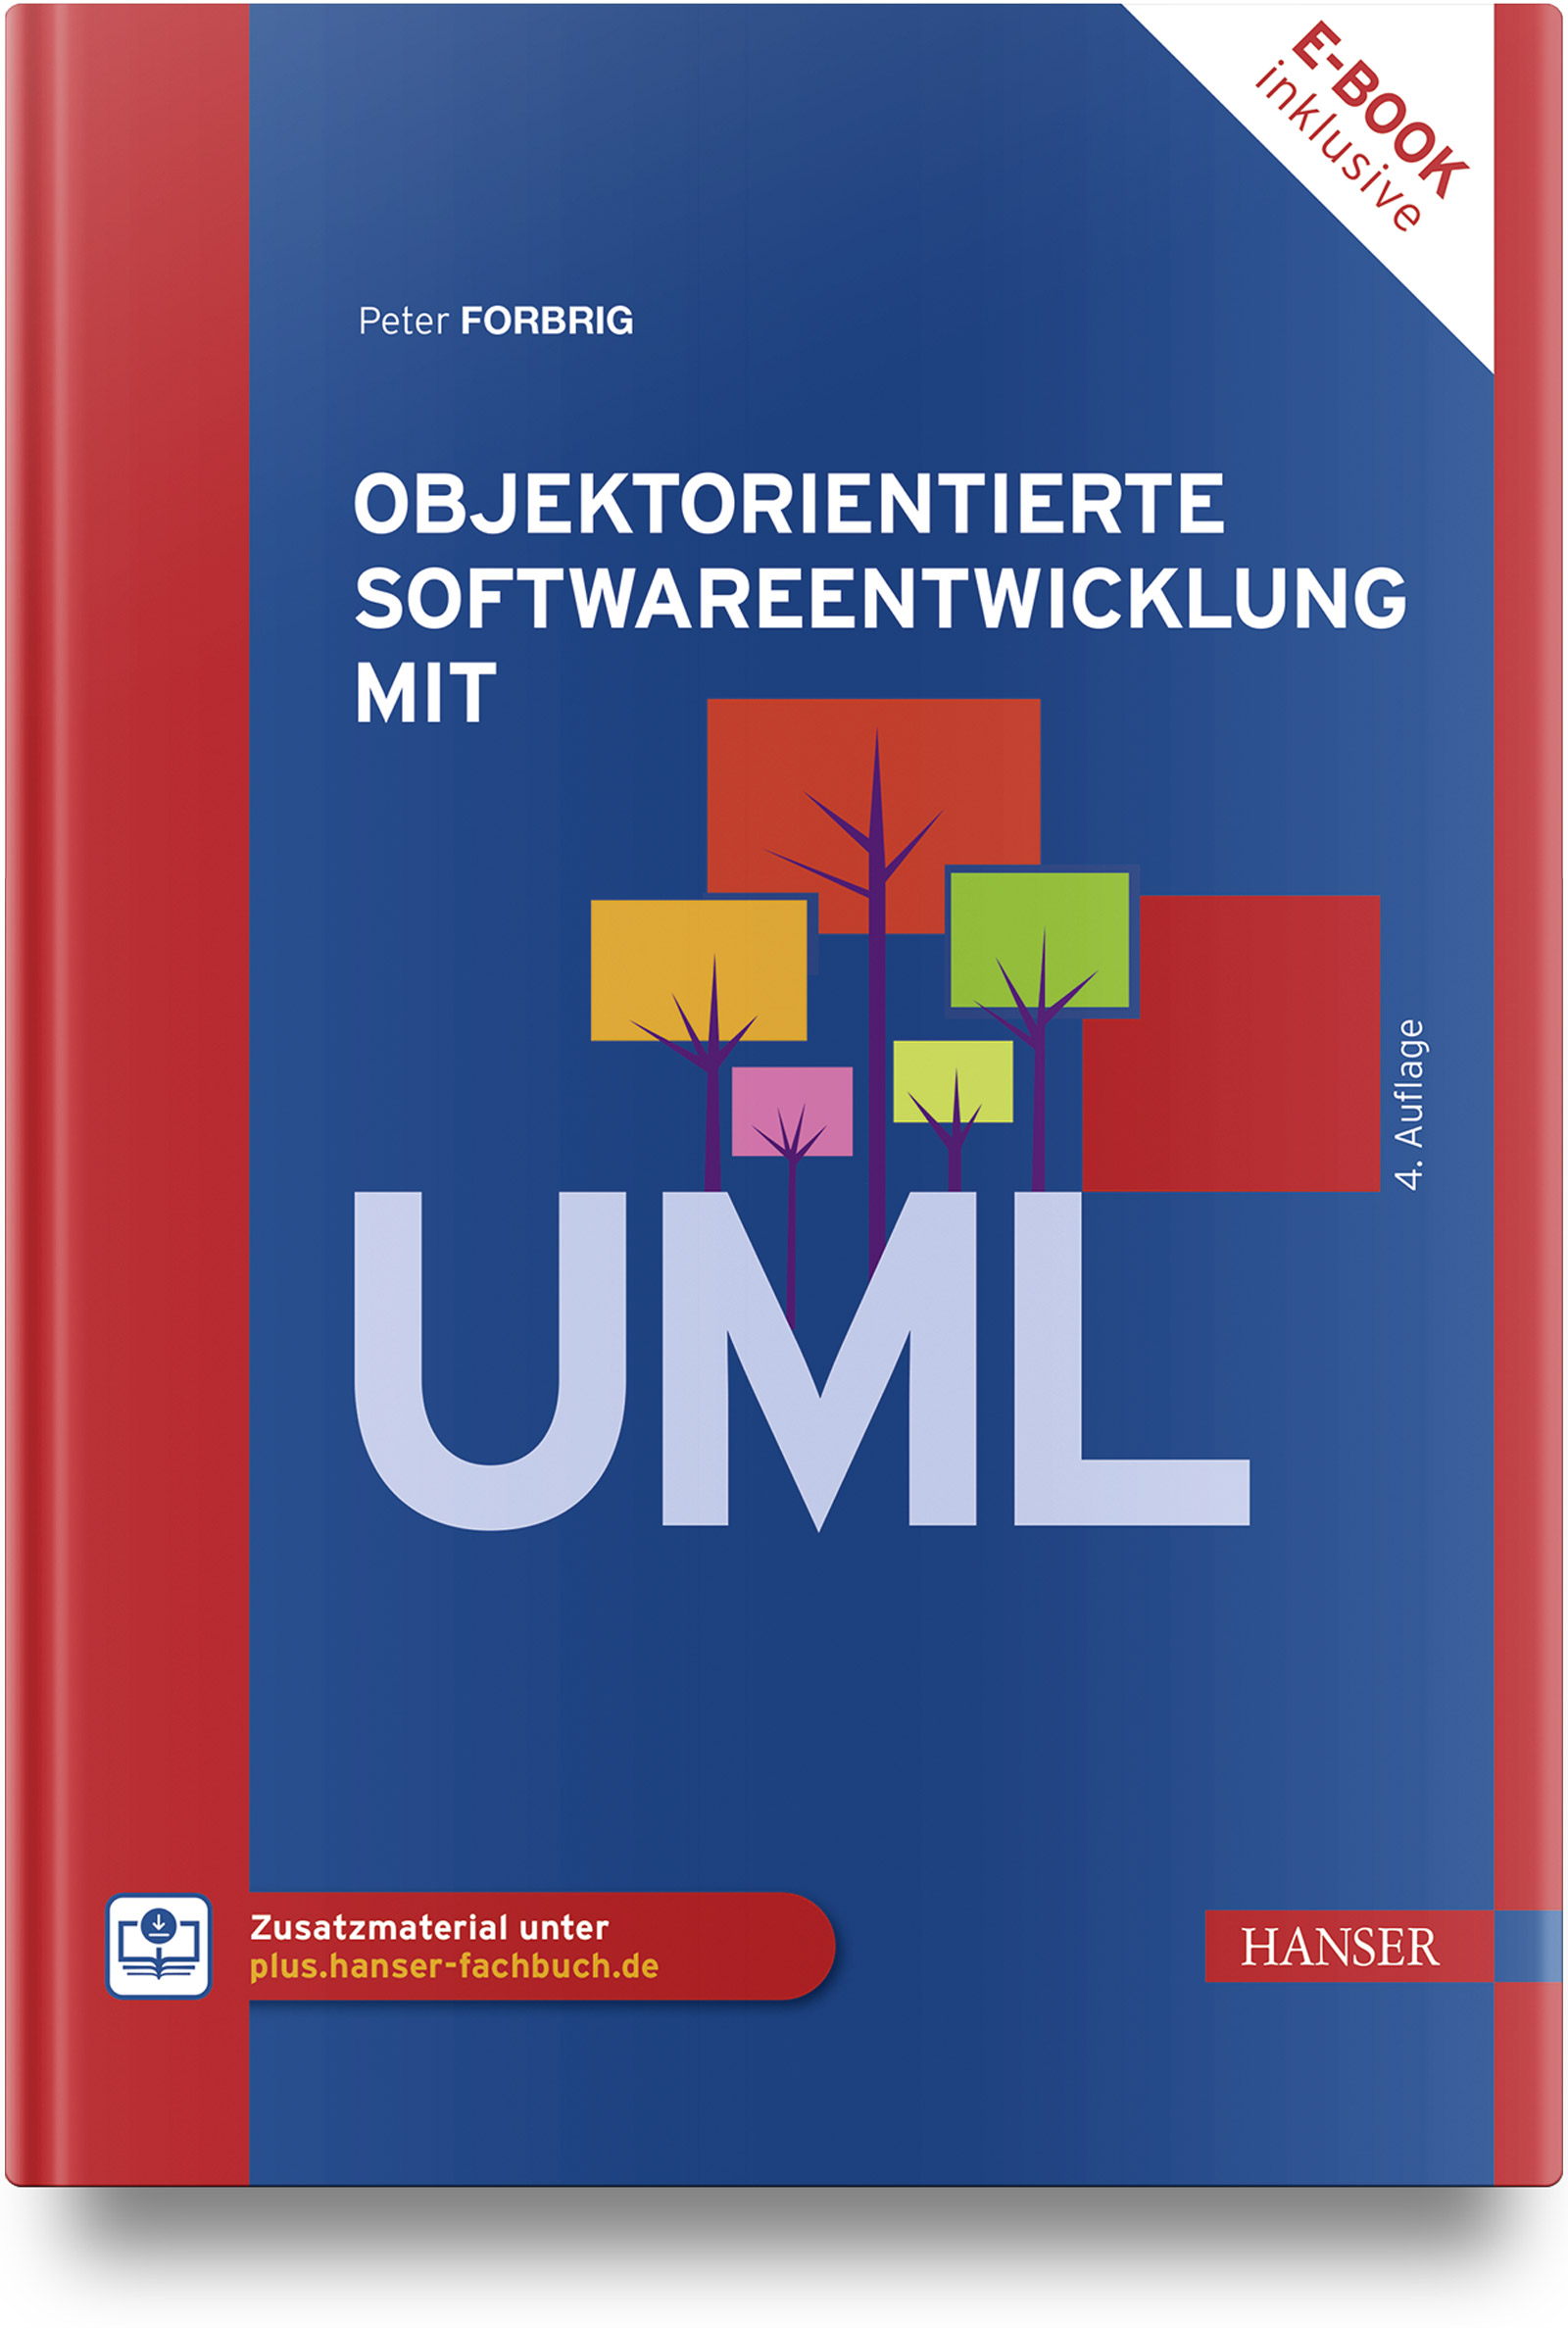 Objektorientierte Softwareentwicklung mit UML (4. Auflage)